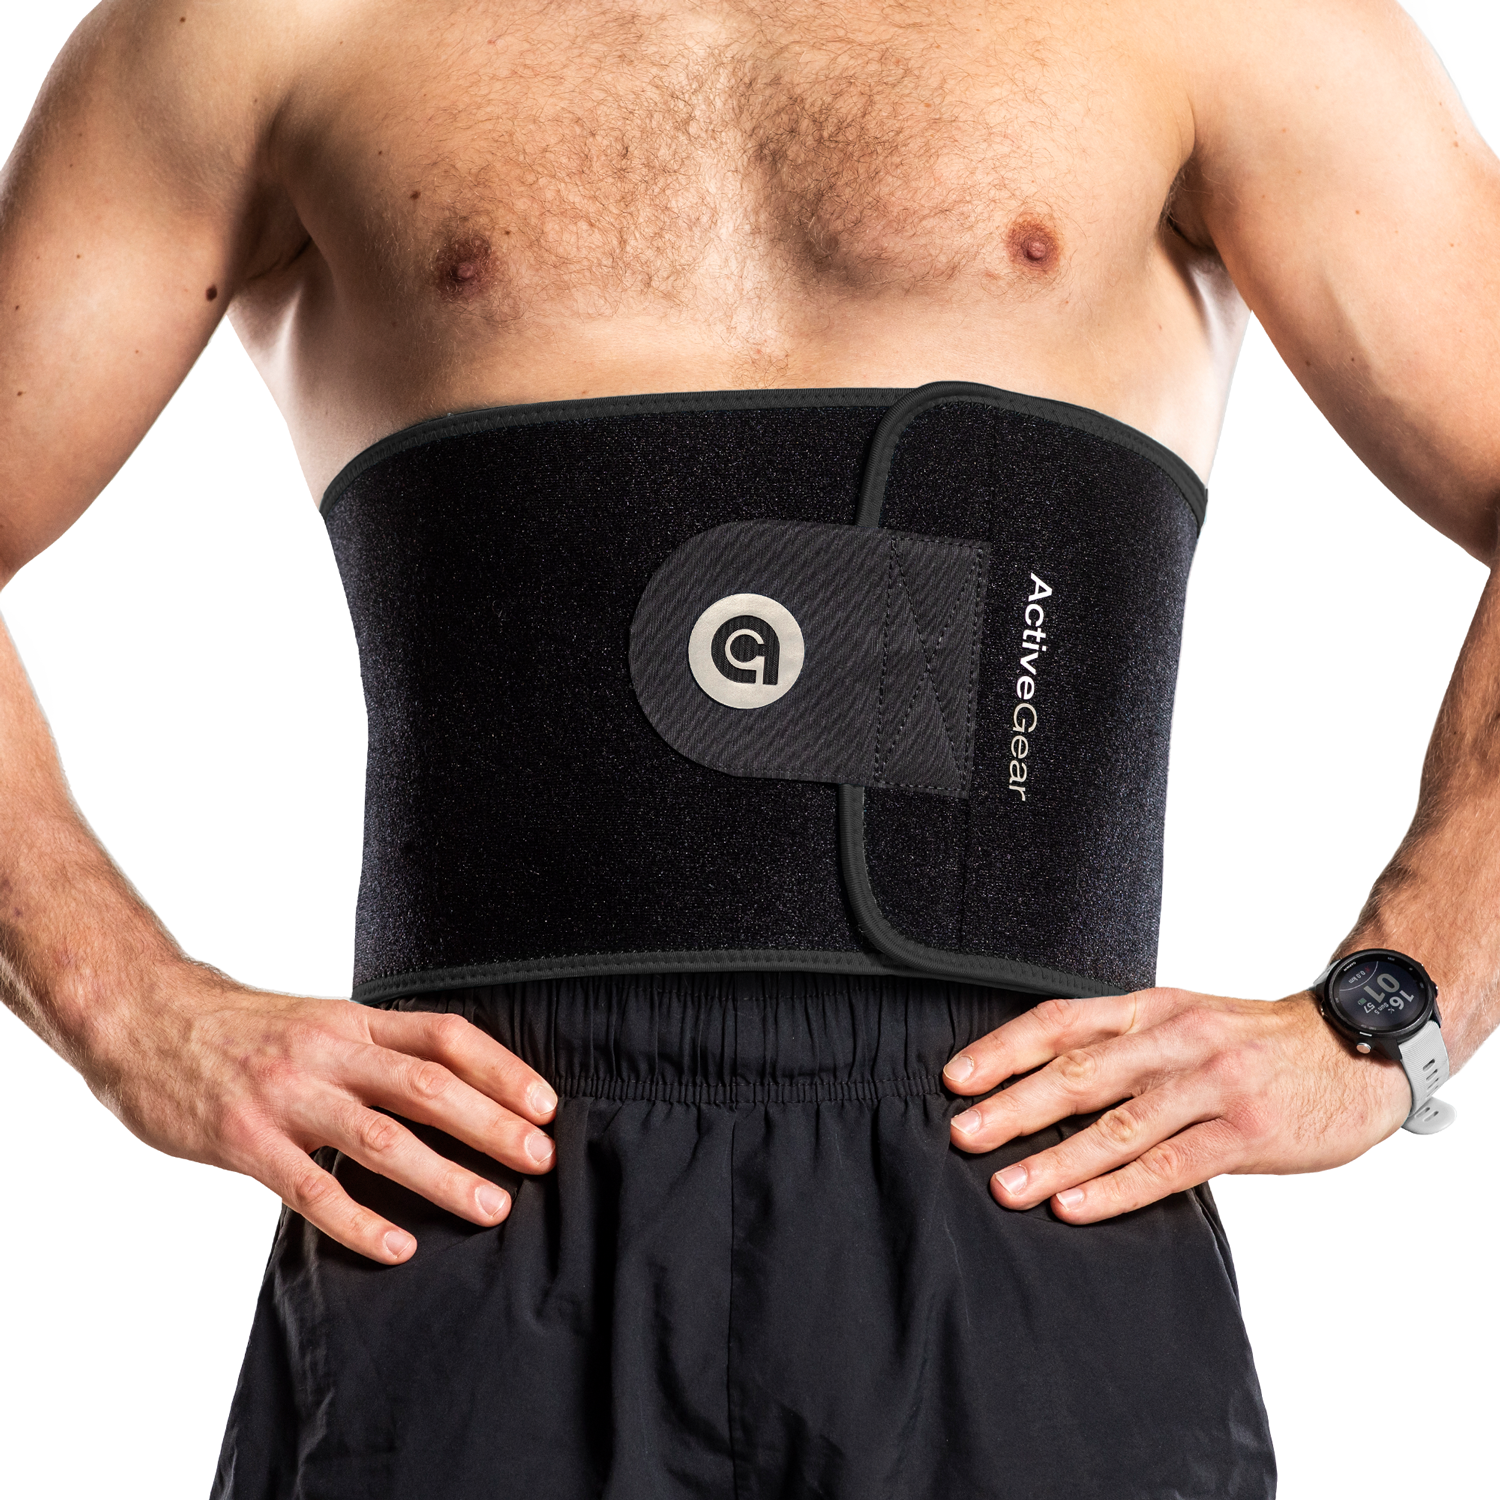 ActiveGear Waist Trimmer Belt For Stomach And Back Lumbar Support